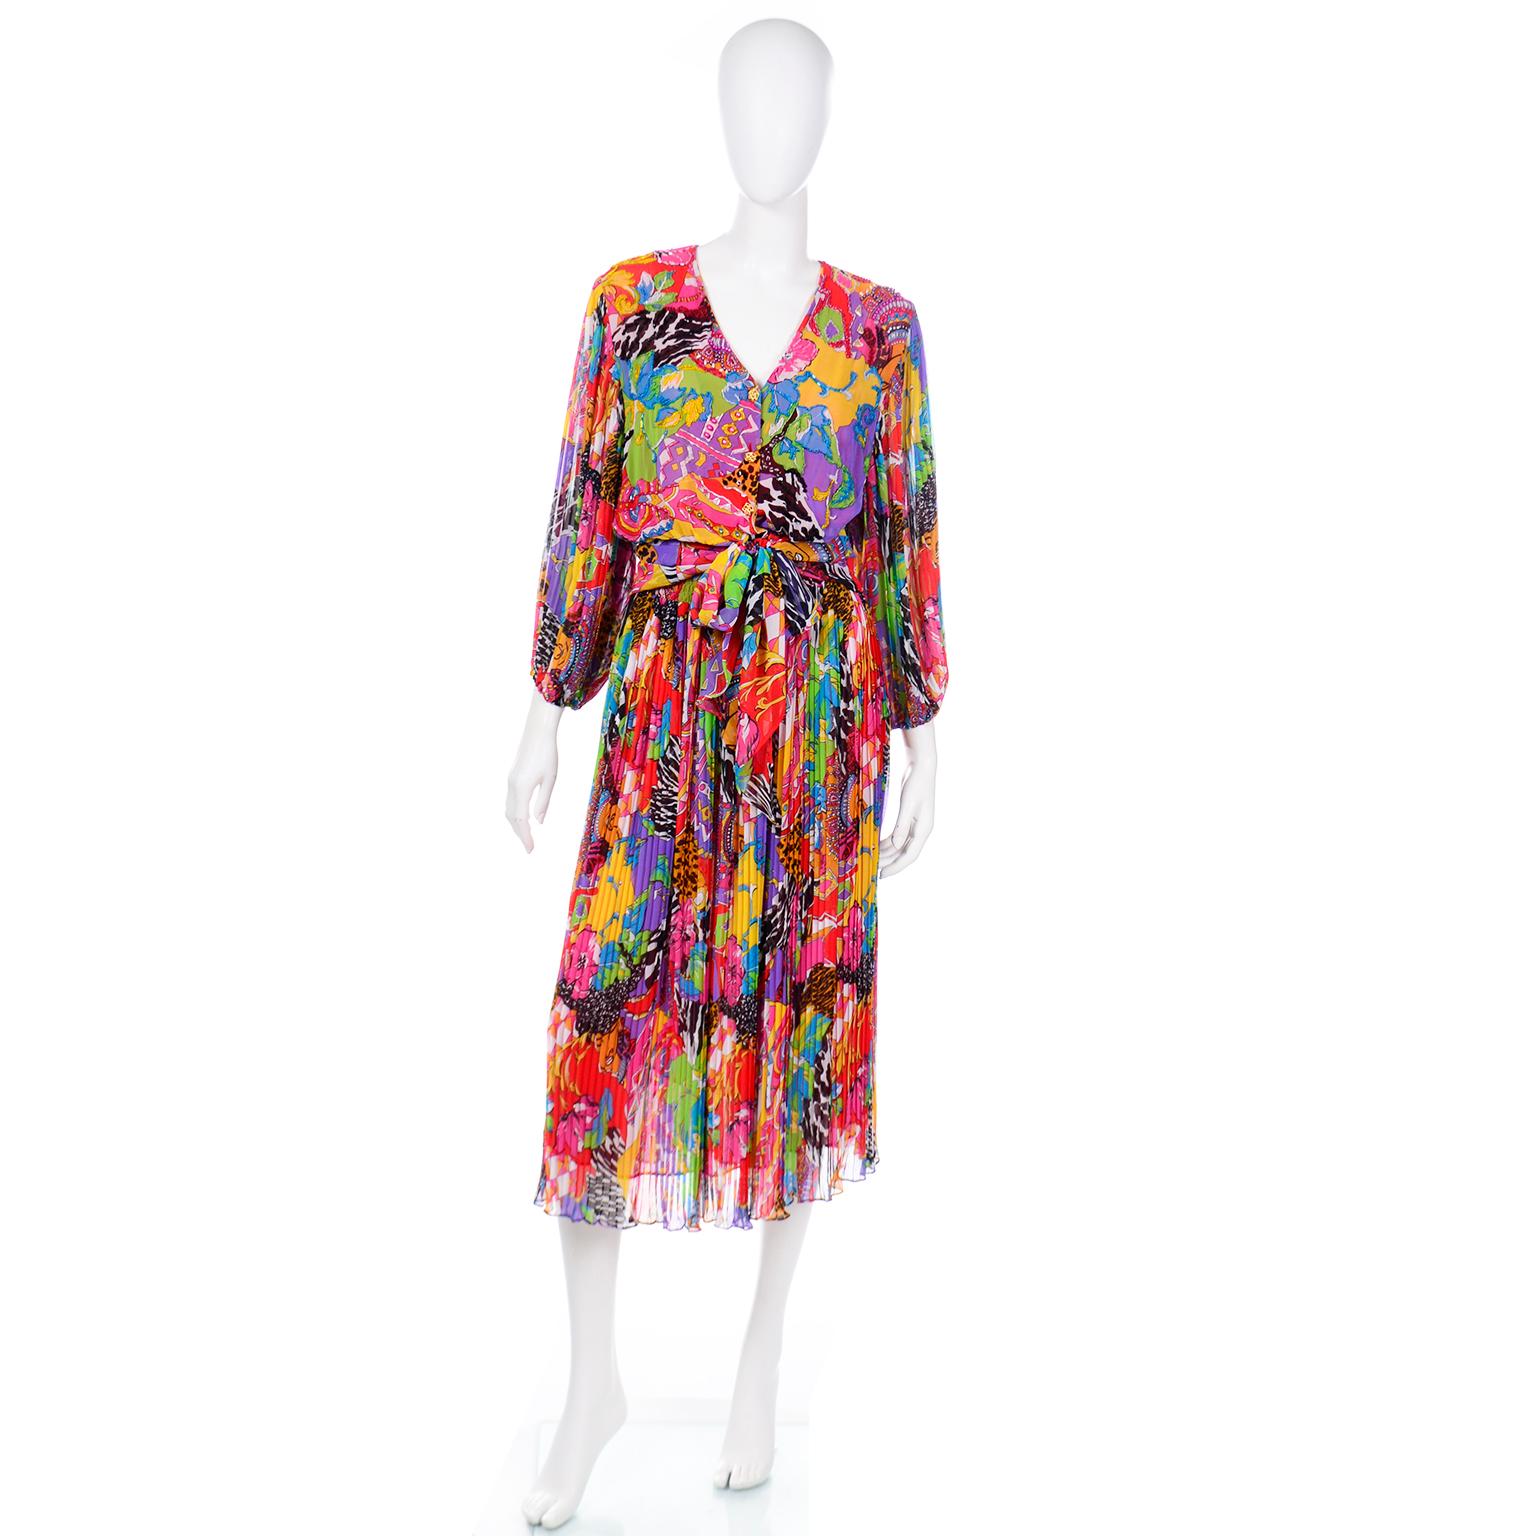 Dies ist ein Spaß Vintage Diane Freis 2 Stück Kleid in einem kühnen Multi gemusterten Druck. Das leicht zu tragende Oberteil hat plissierte Ärmel mit elastischen Bündchen und eine taillierte Passform mit einer breiten Schärpe zum Binden und